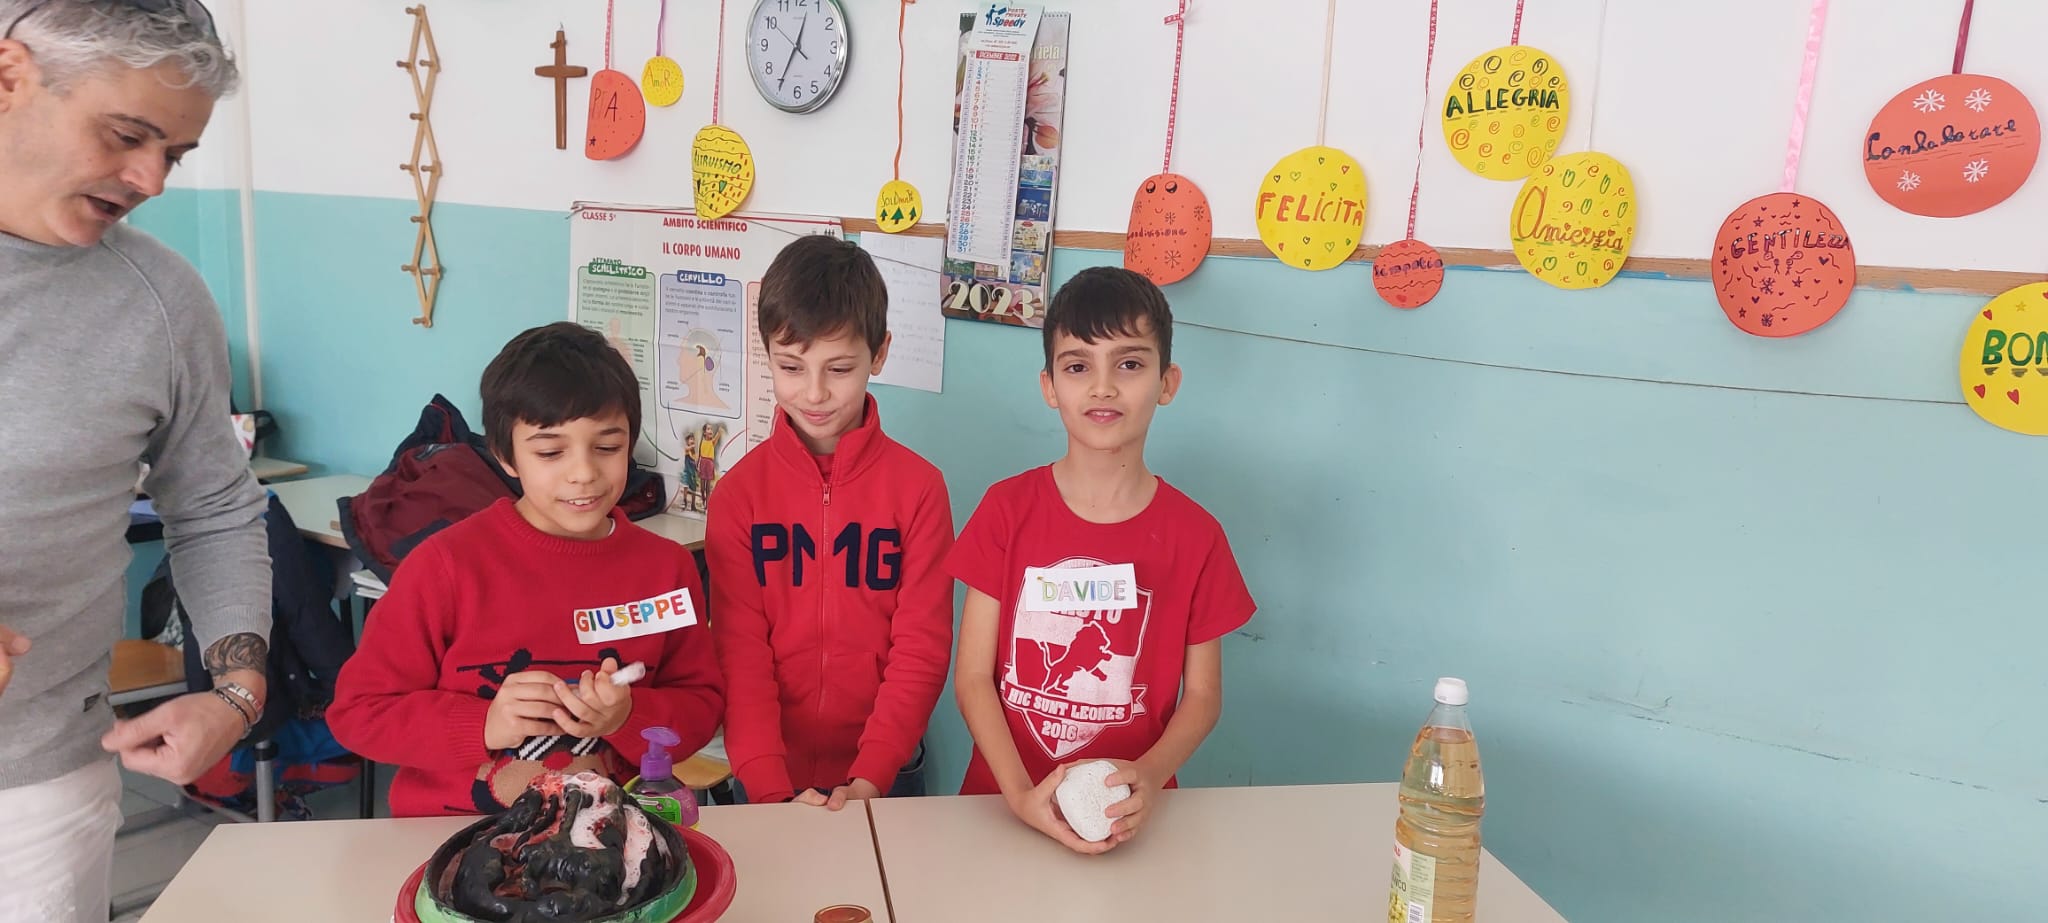 Scopri di più sull'articolo Grande partecipazione delle famiglie all’Open Day della Scuola Primaria “G. Spataro” Ic1 di Vasto